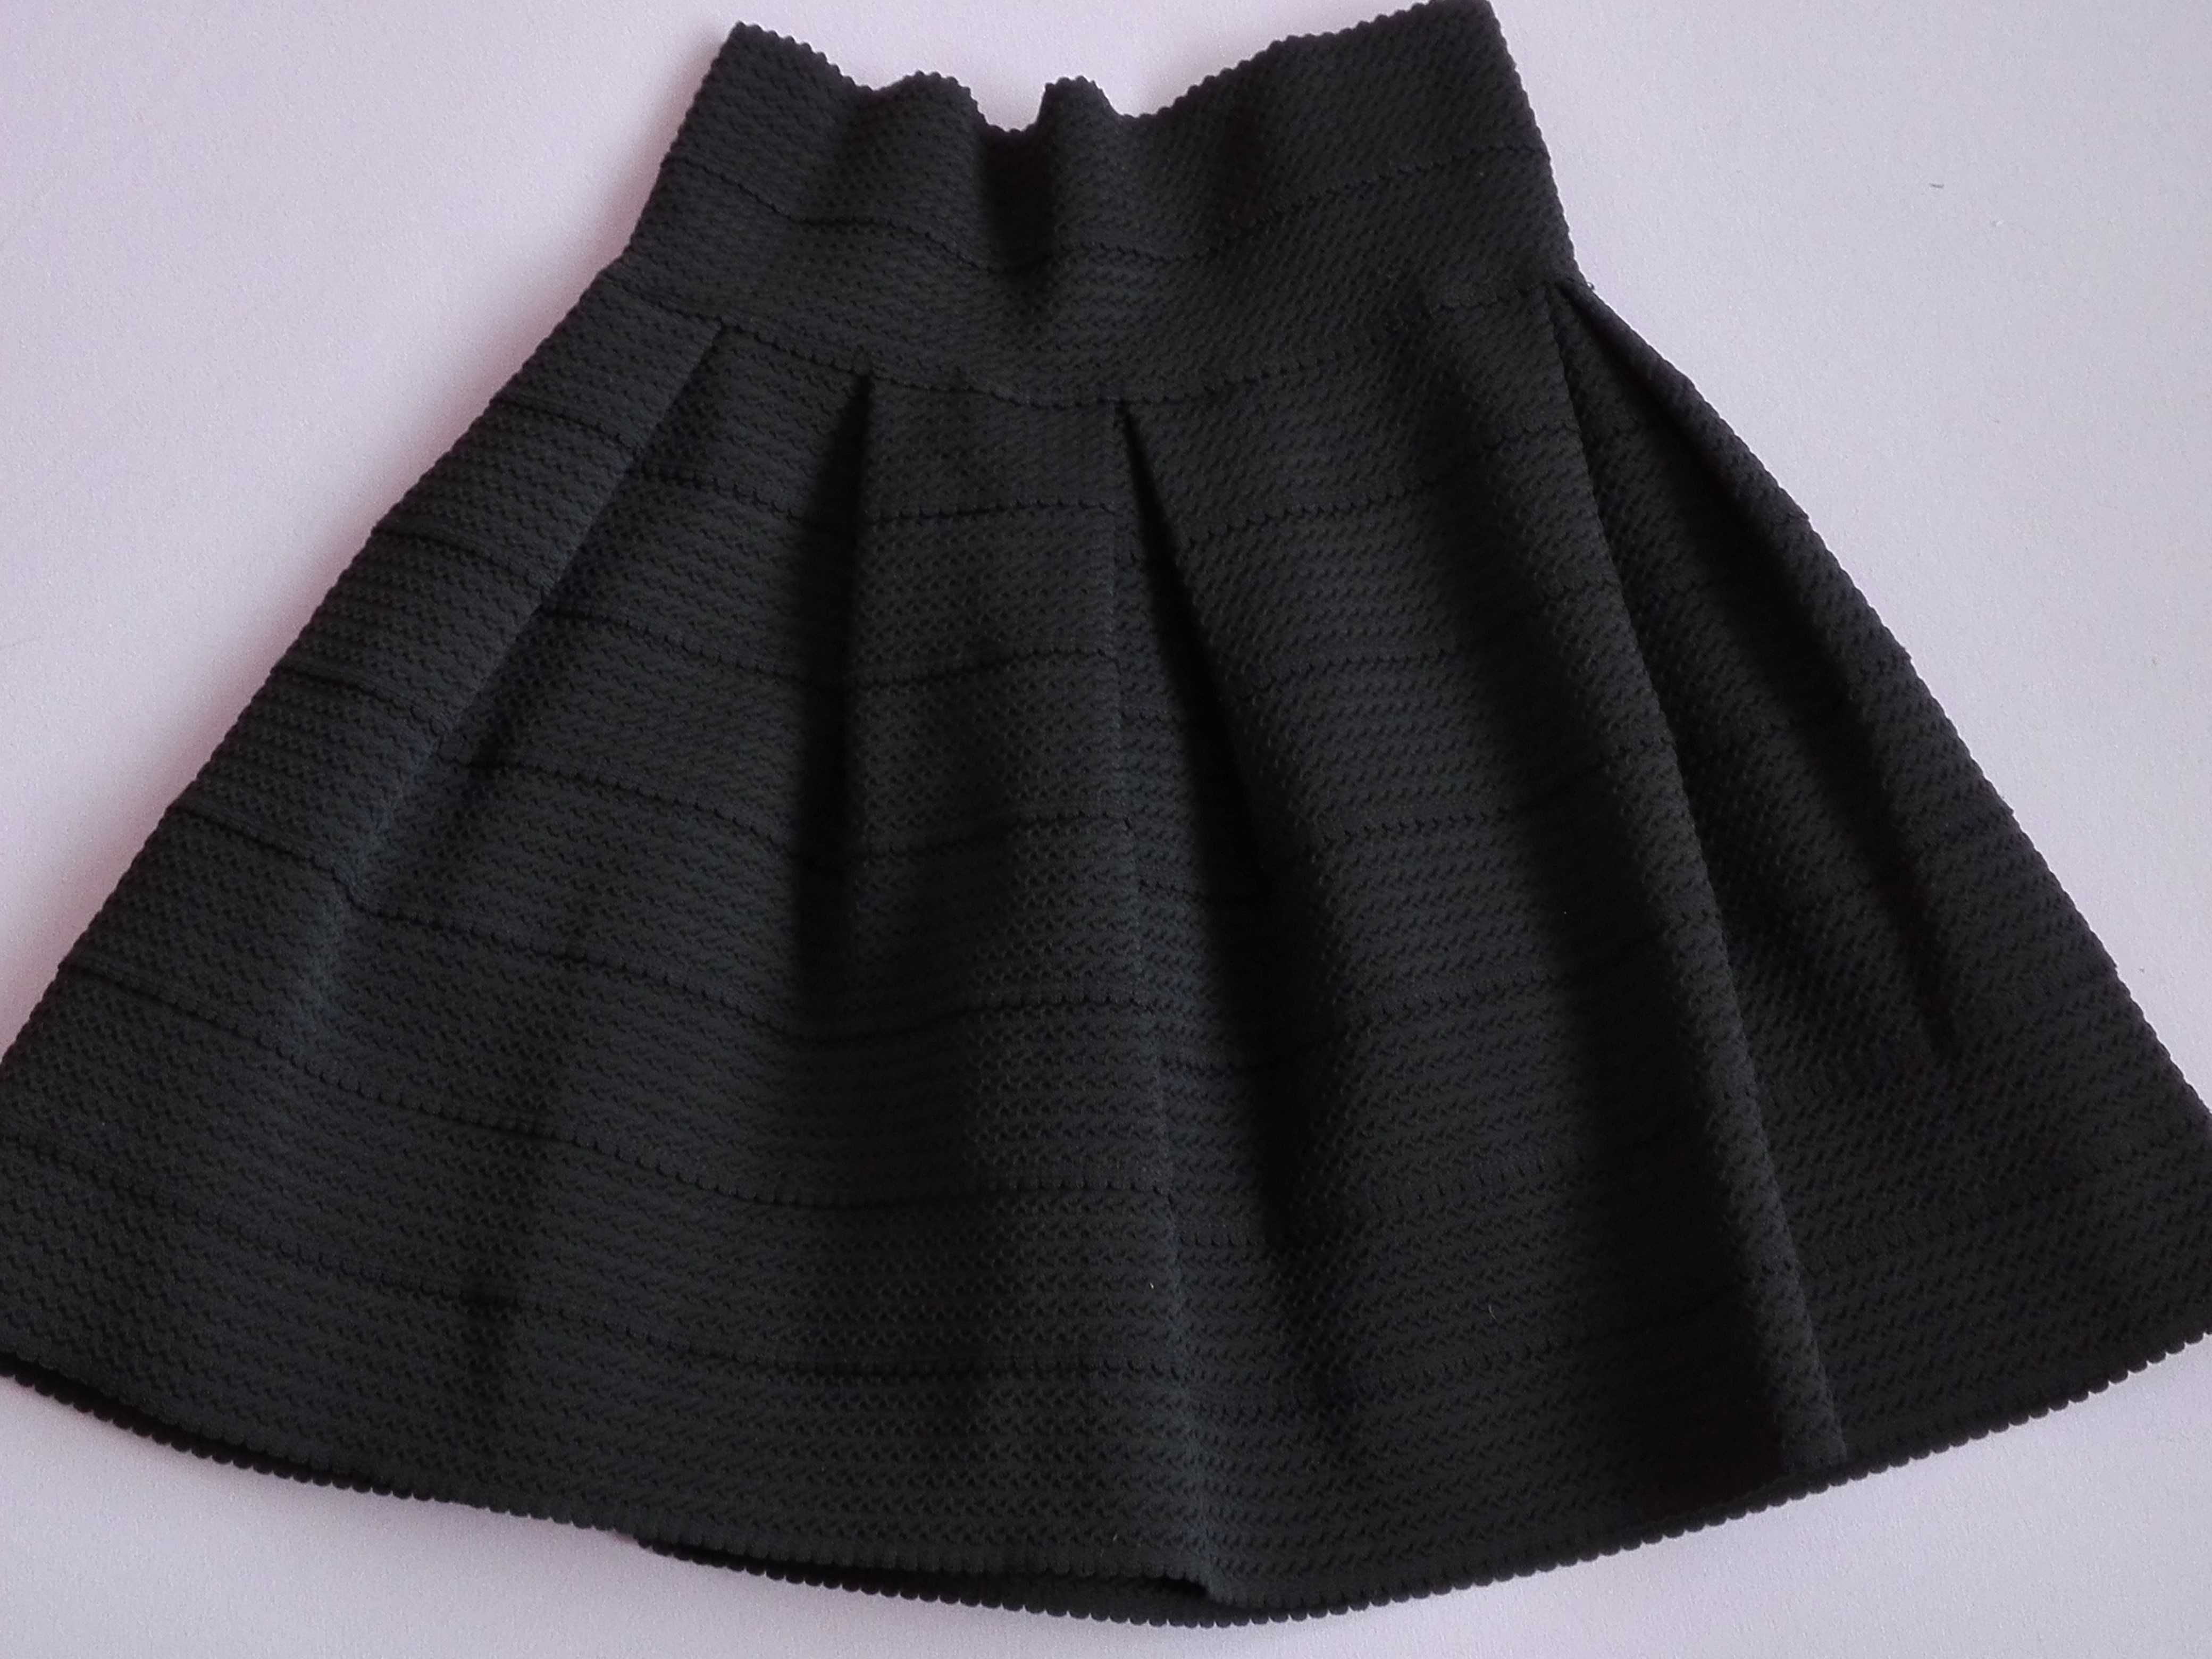 czarna spódnica spódniczka S, H&M, zakończenie roku szkolnego